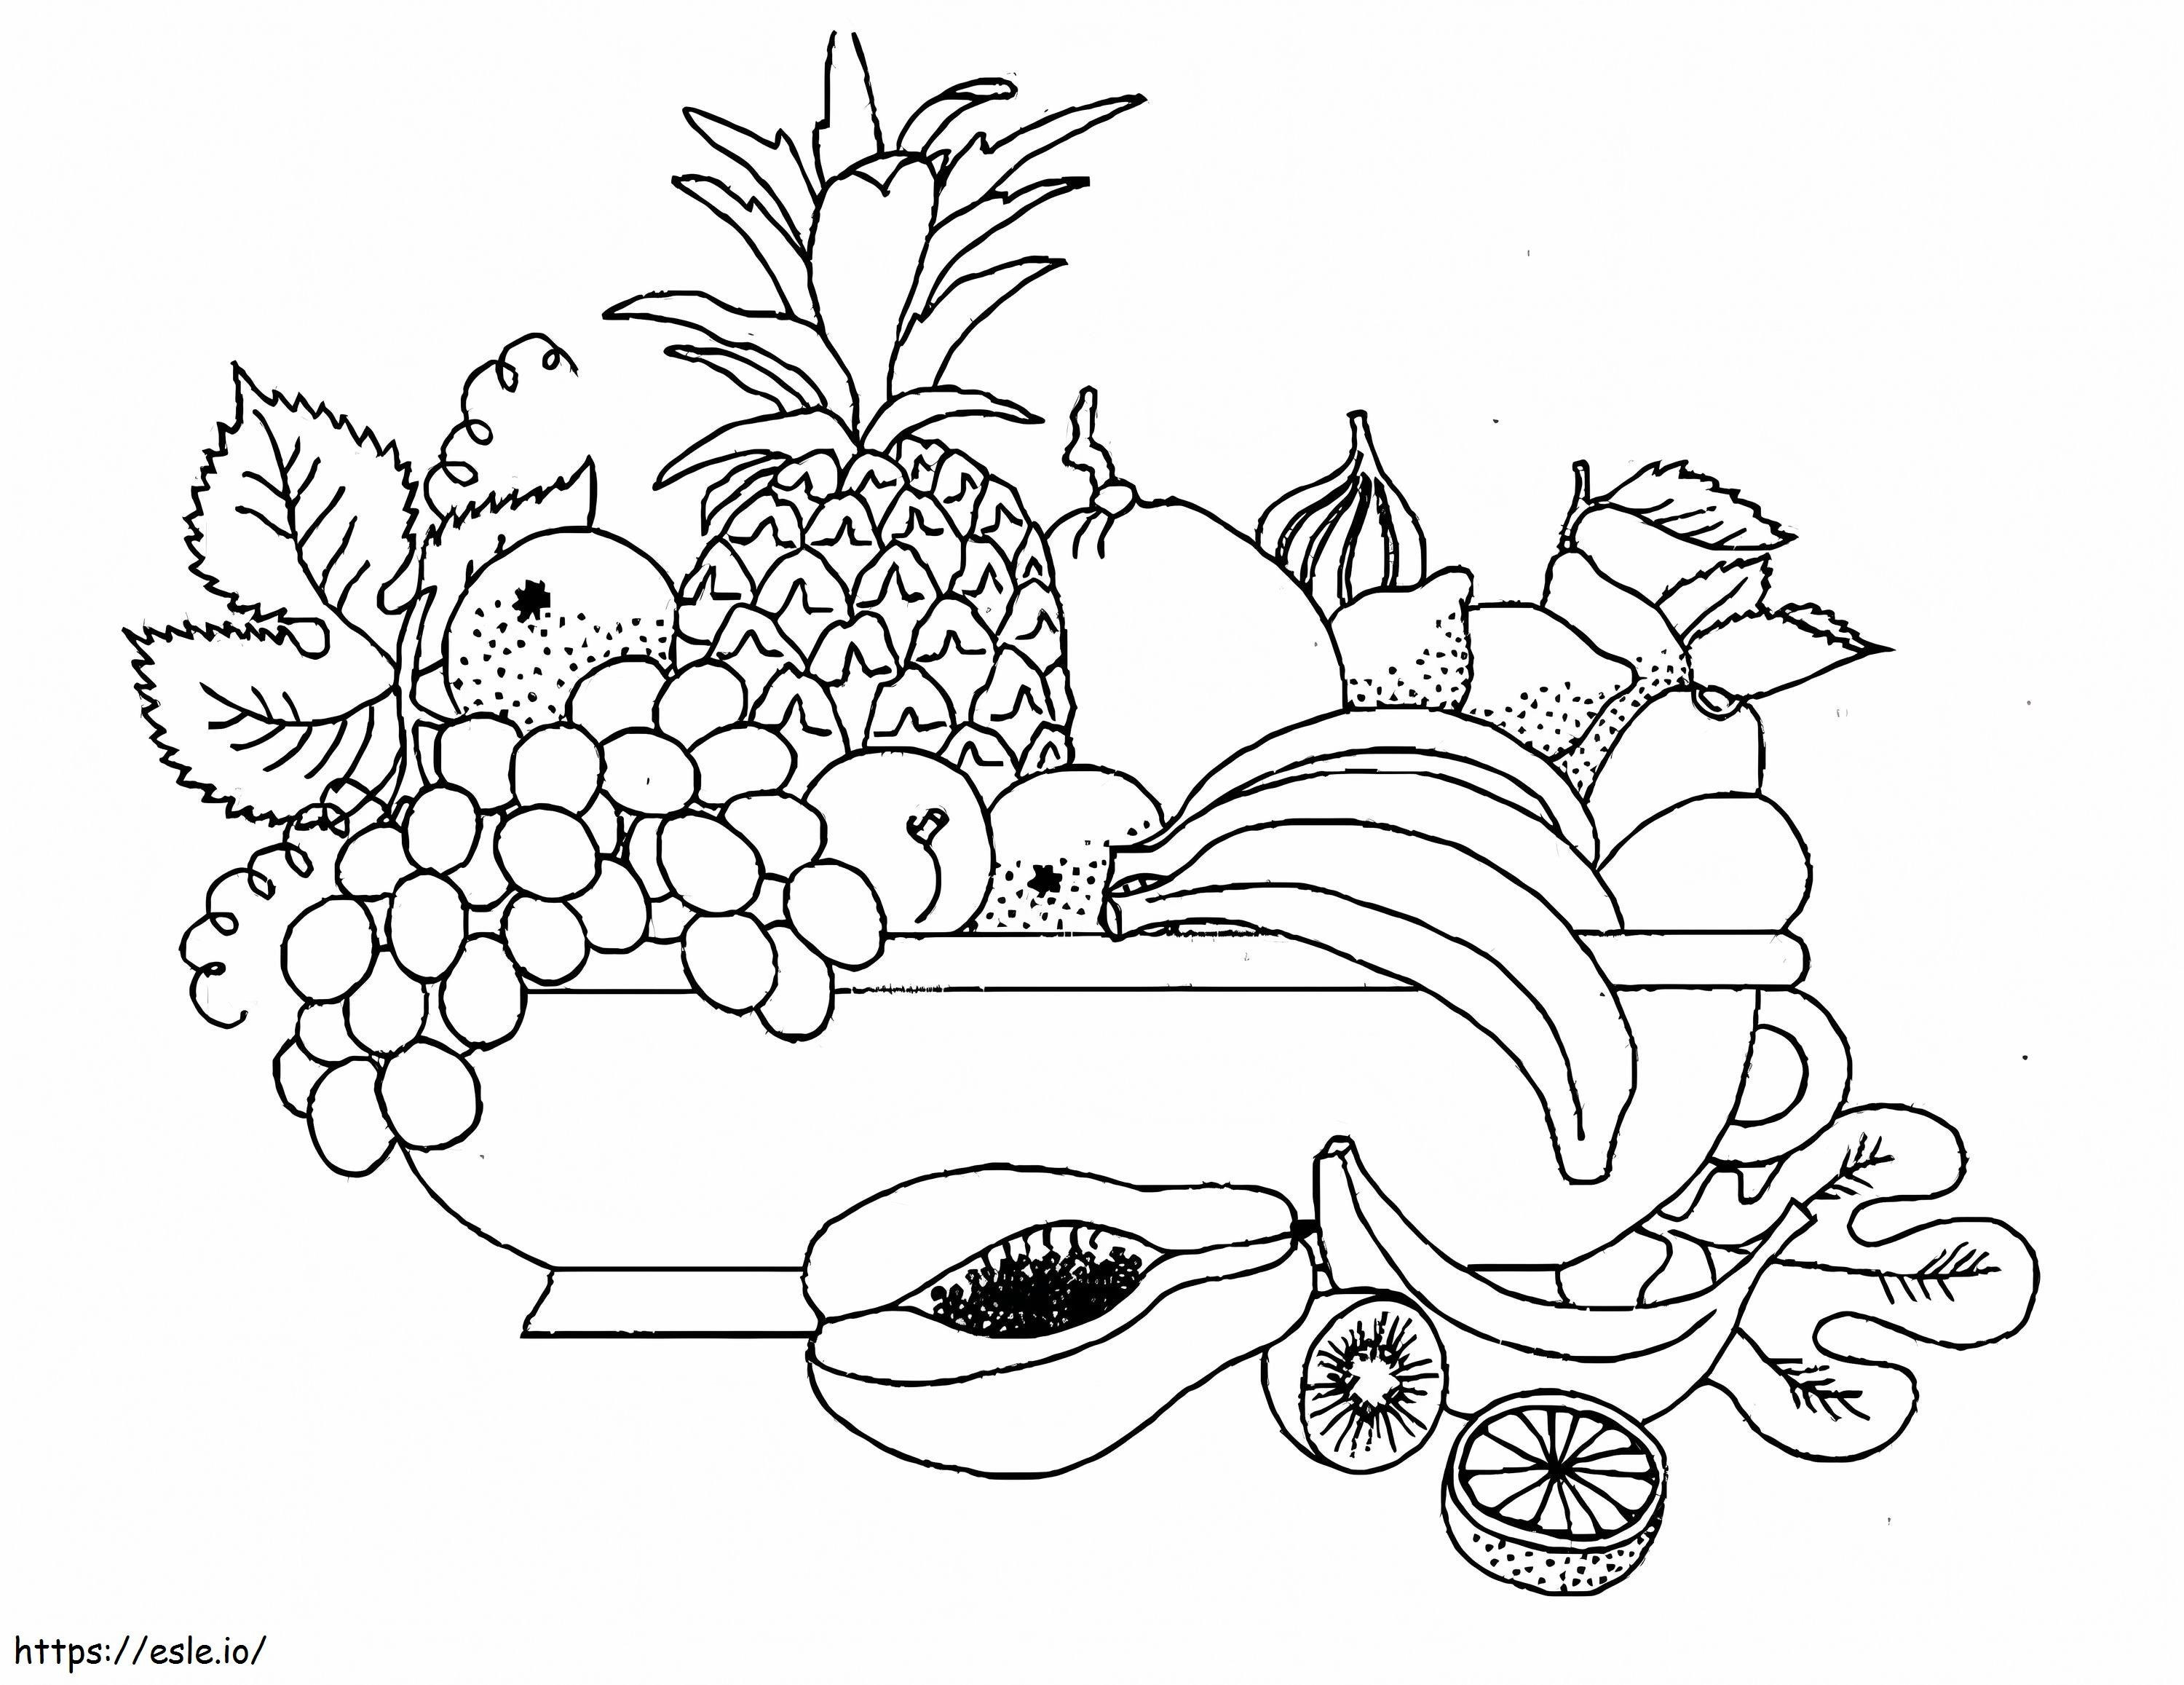 Trauben und Früchte ausmalbilder